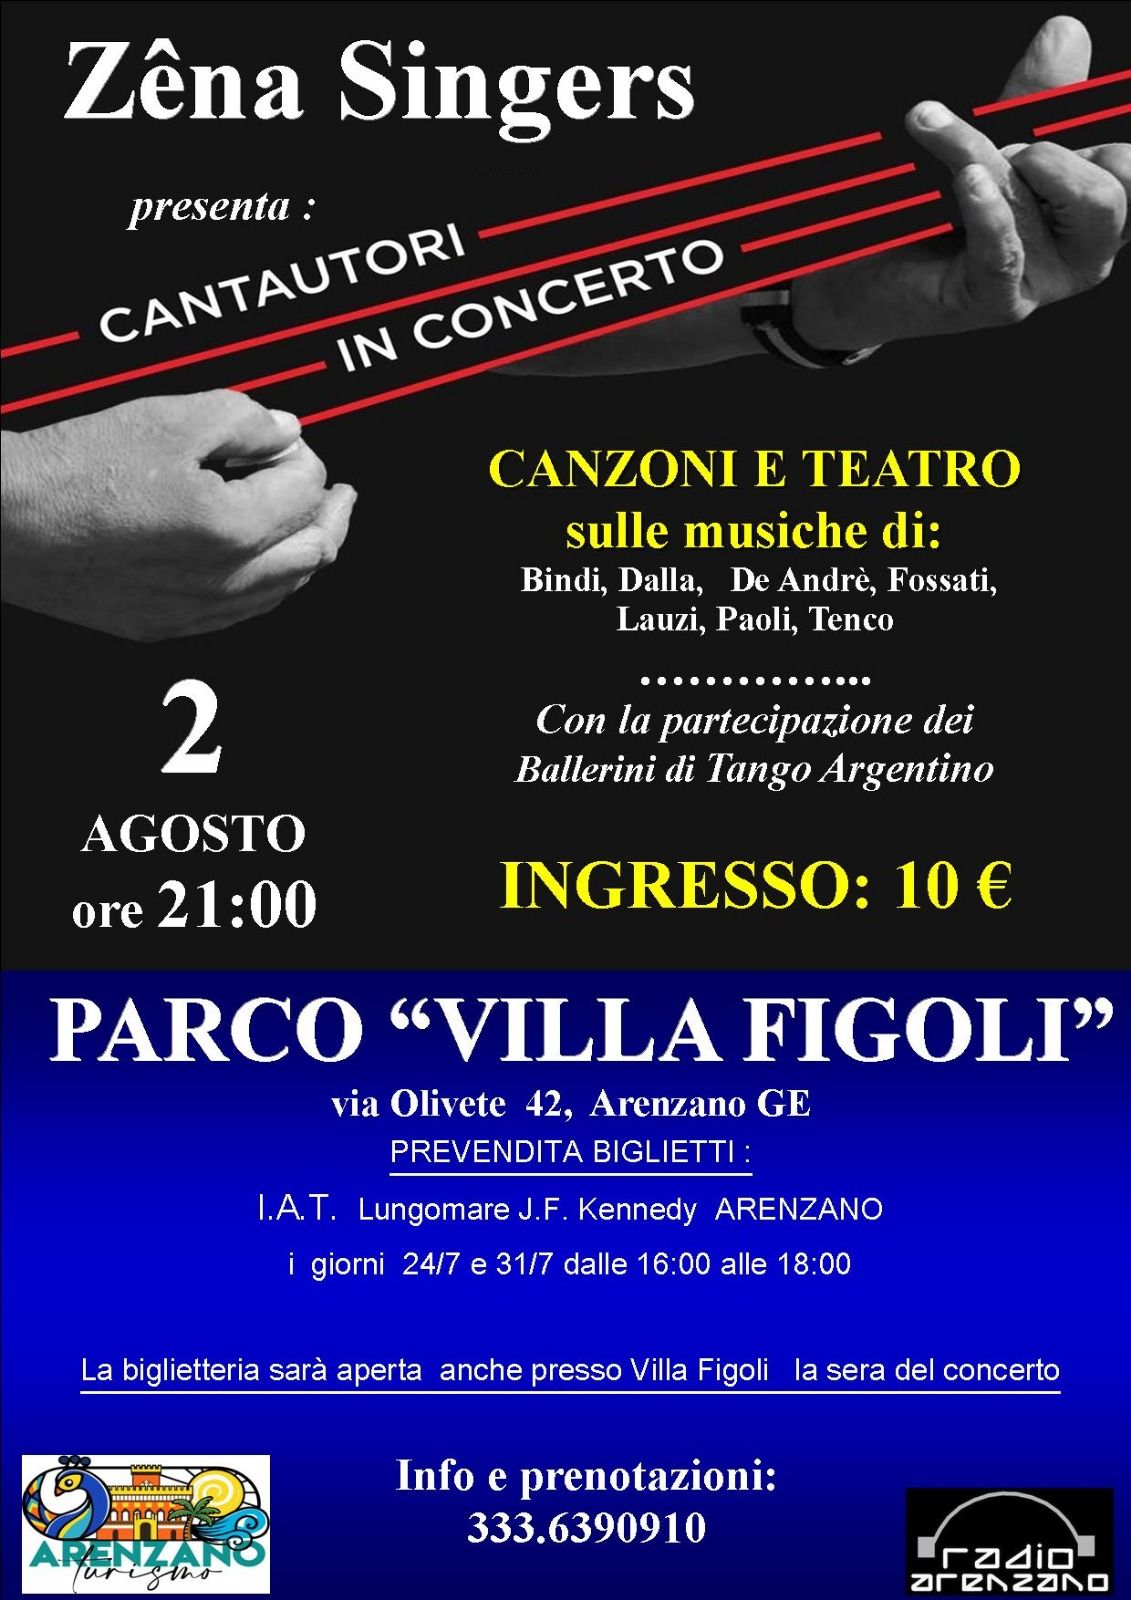 Cantautori in concerto con i Zena Singers a Parco Villa Figoli di Arenzano 